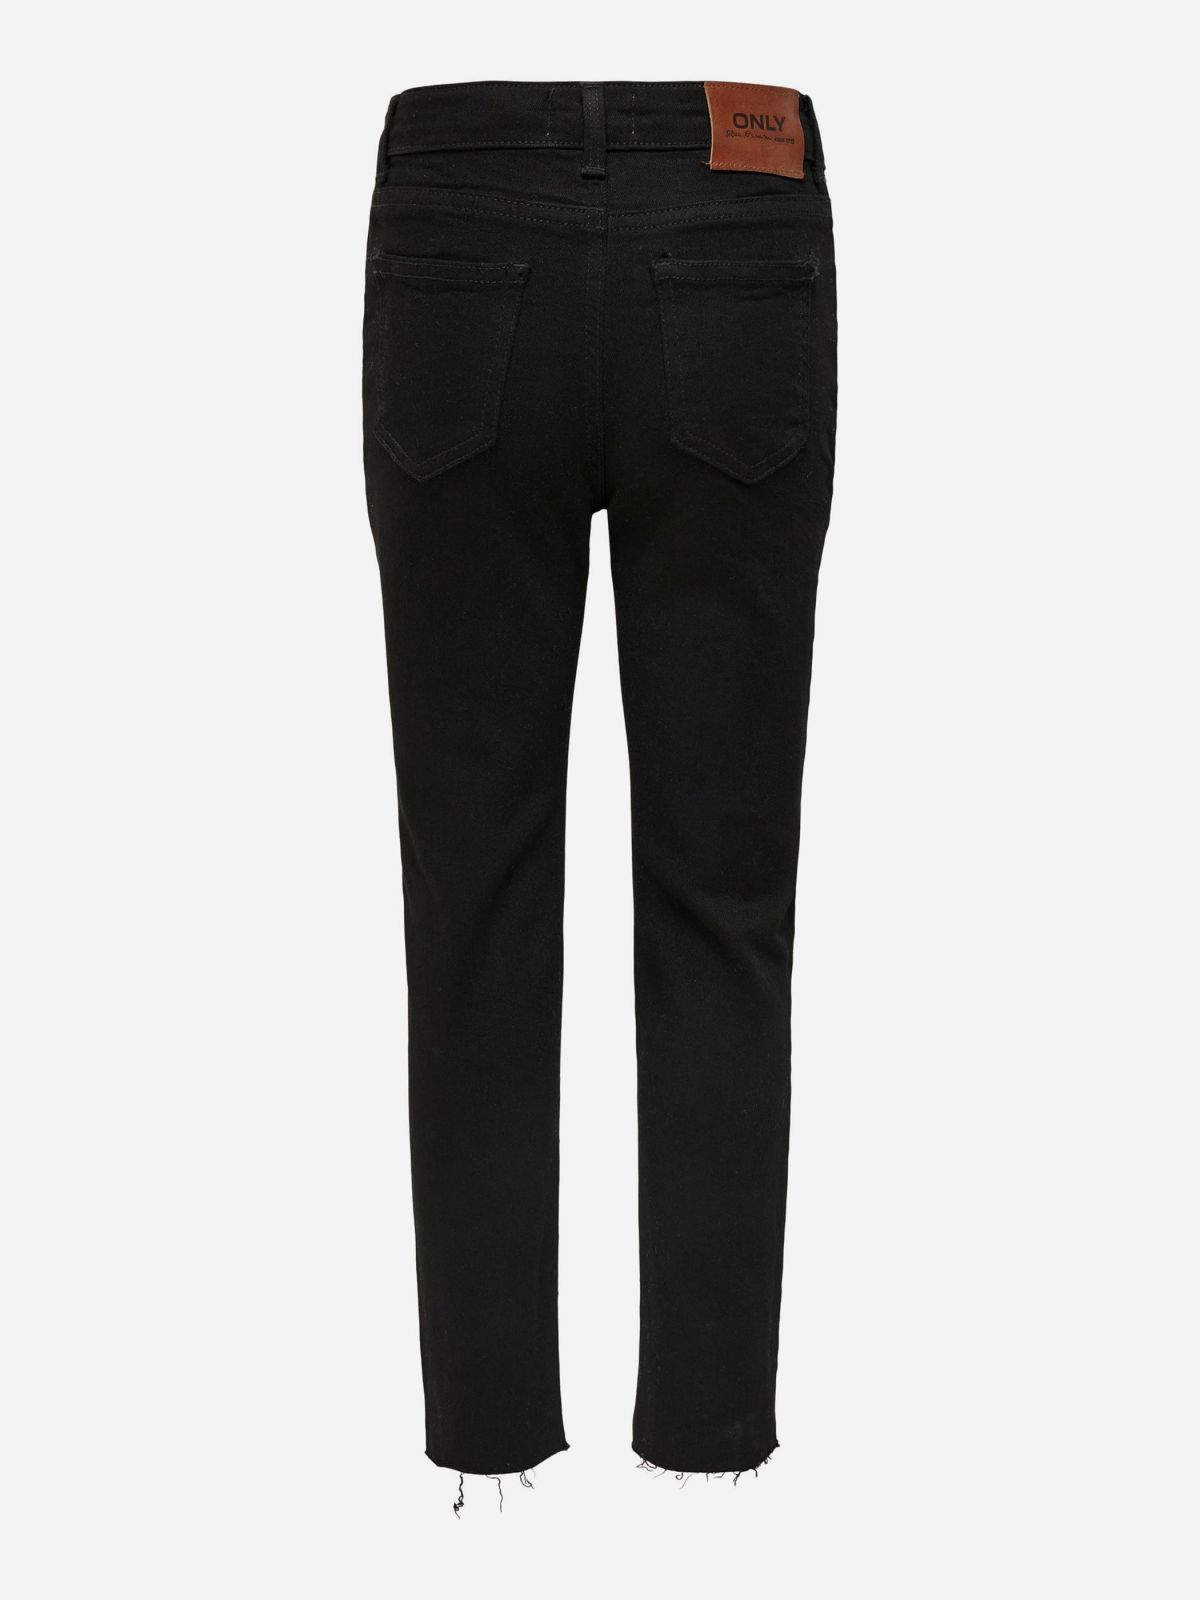  מכנסי ג'ינס עם סיומת גזורה / TEEN של ONLY